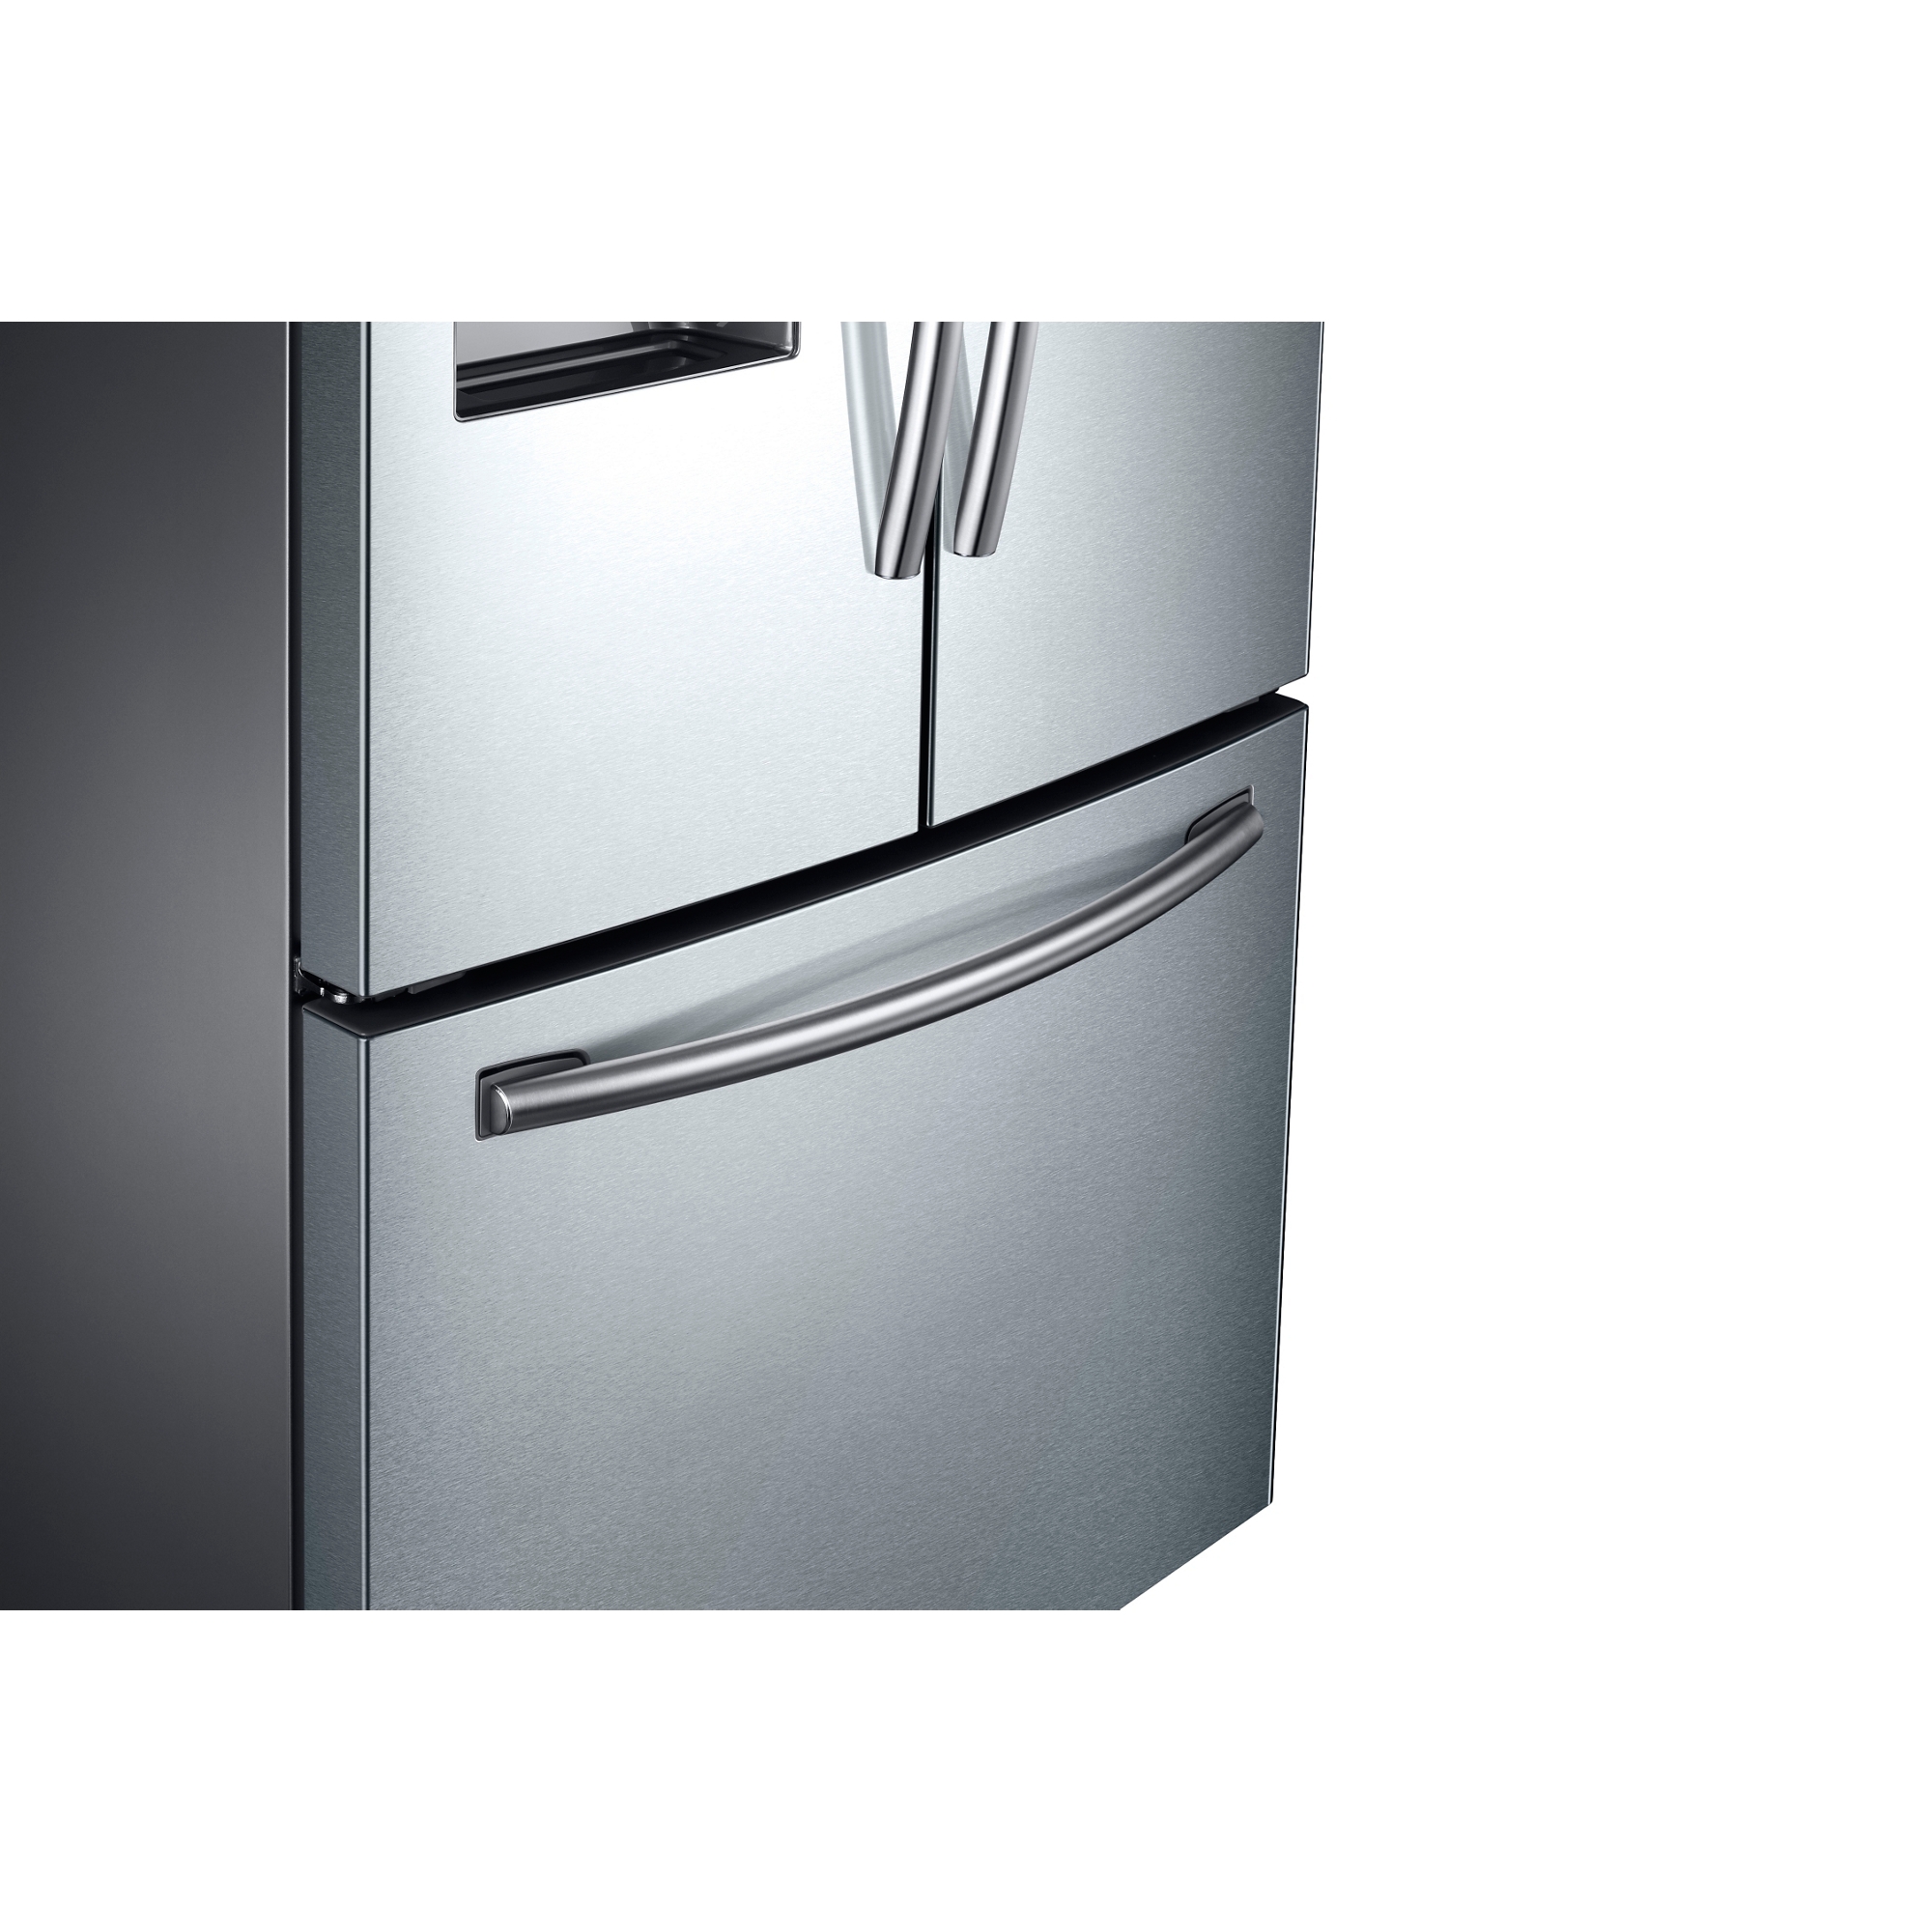 EZ-Open™ Handle on Freezer Door